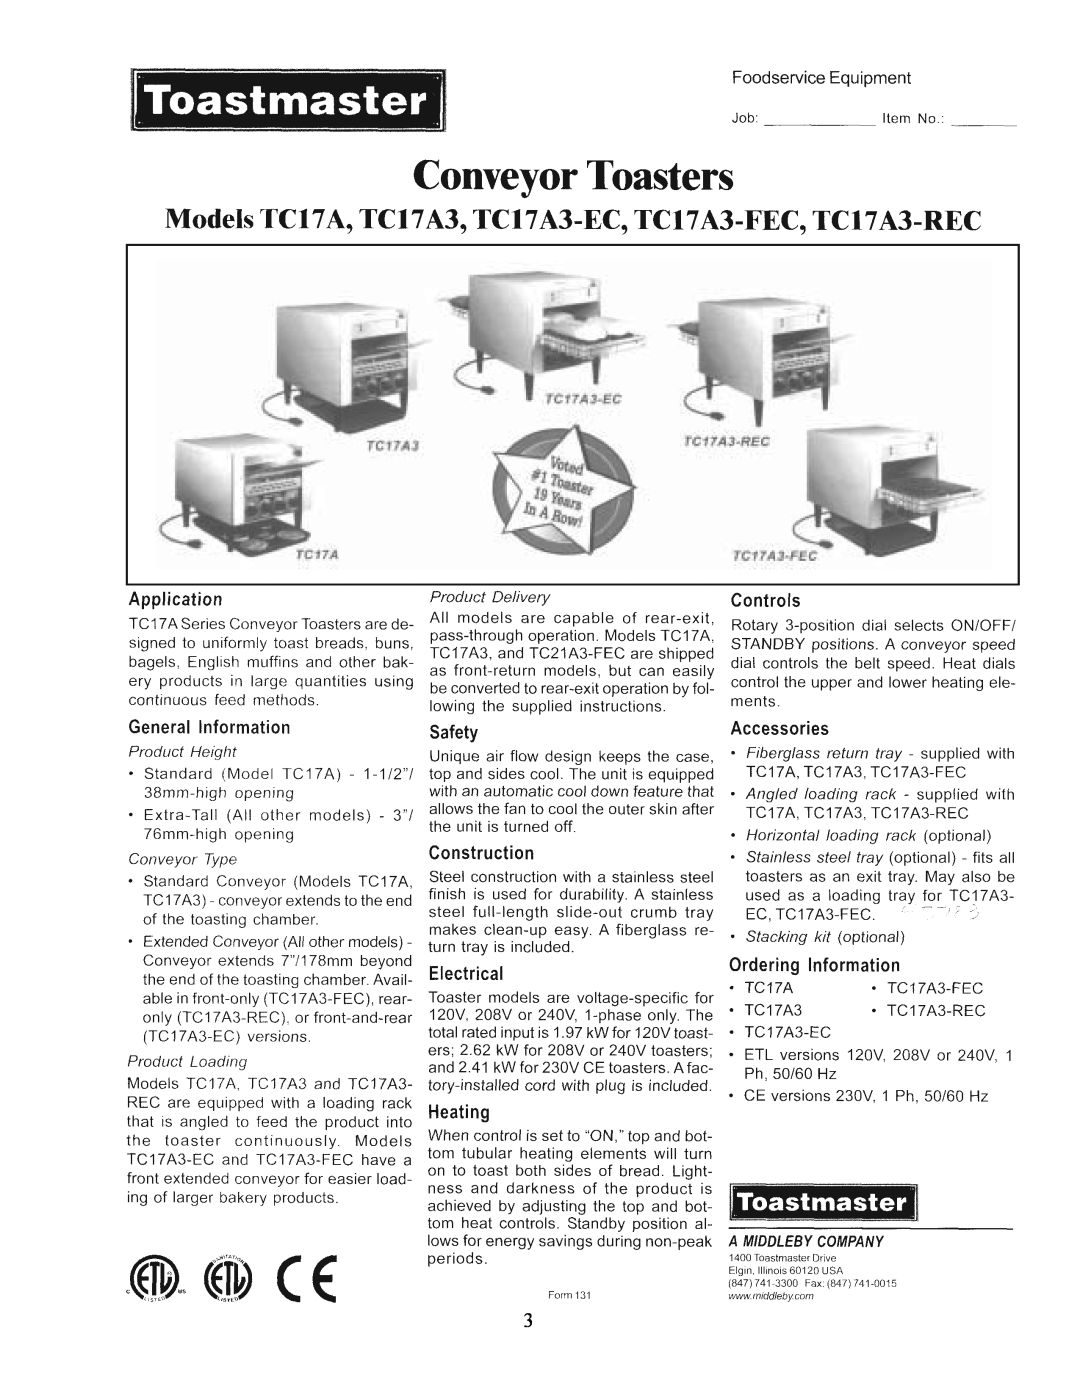 Toastmaster TC21A, TC17A manual 